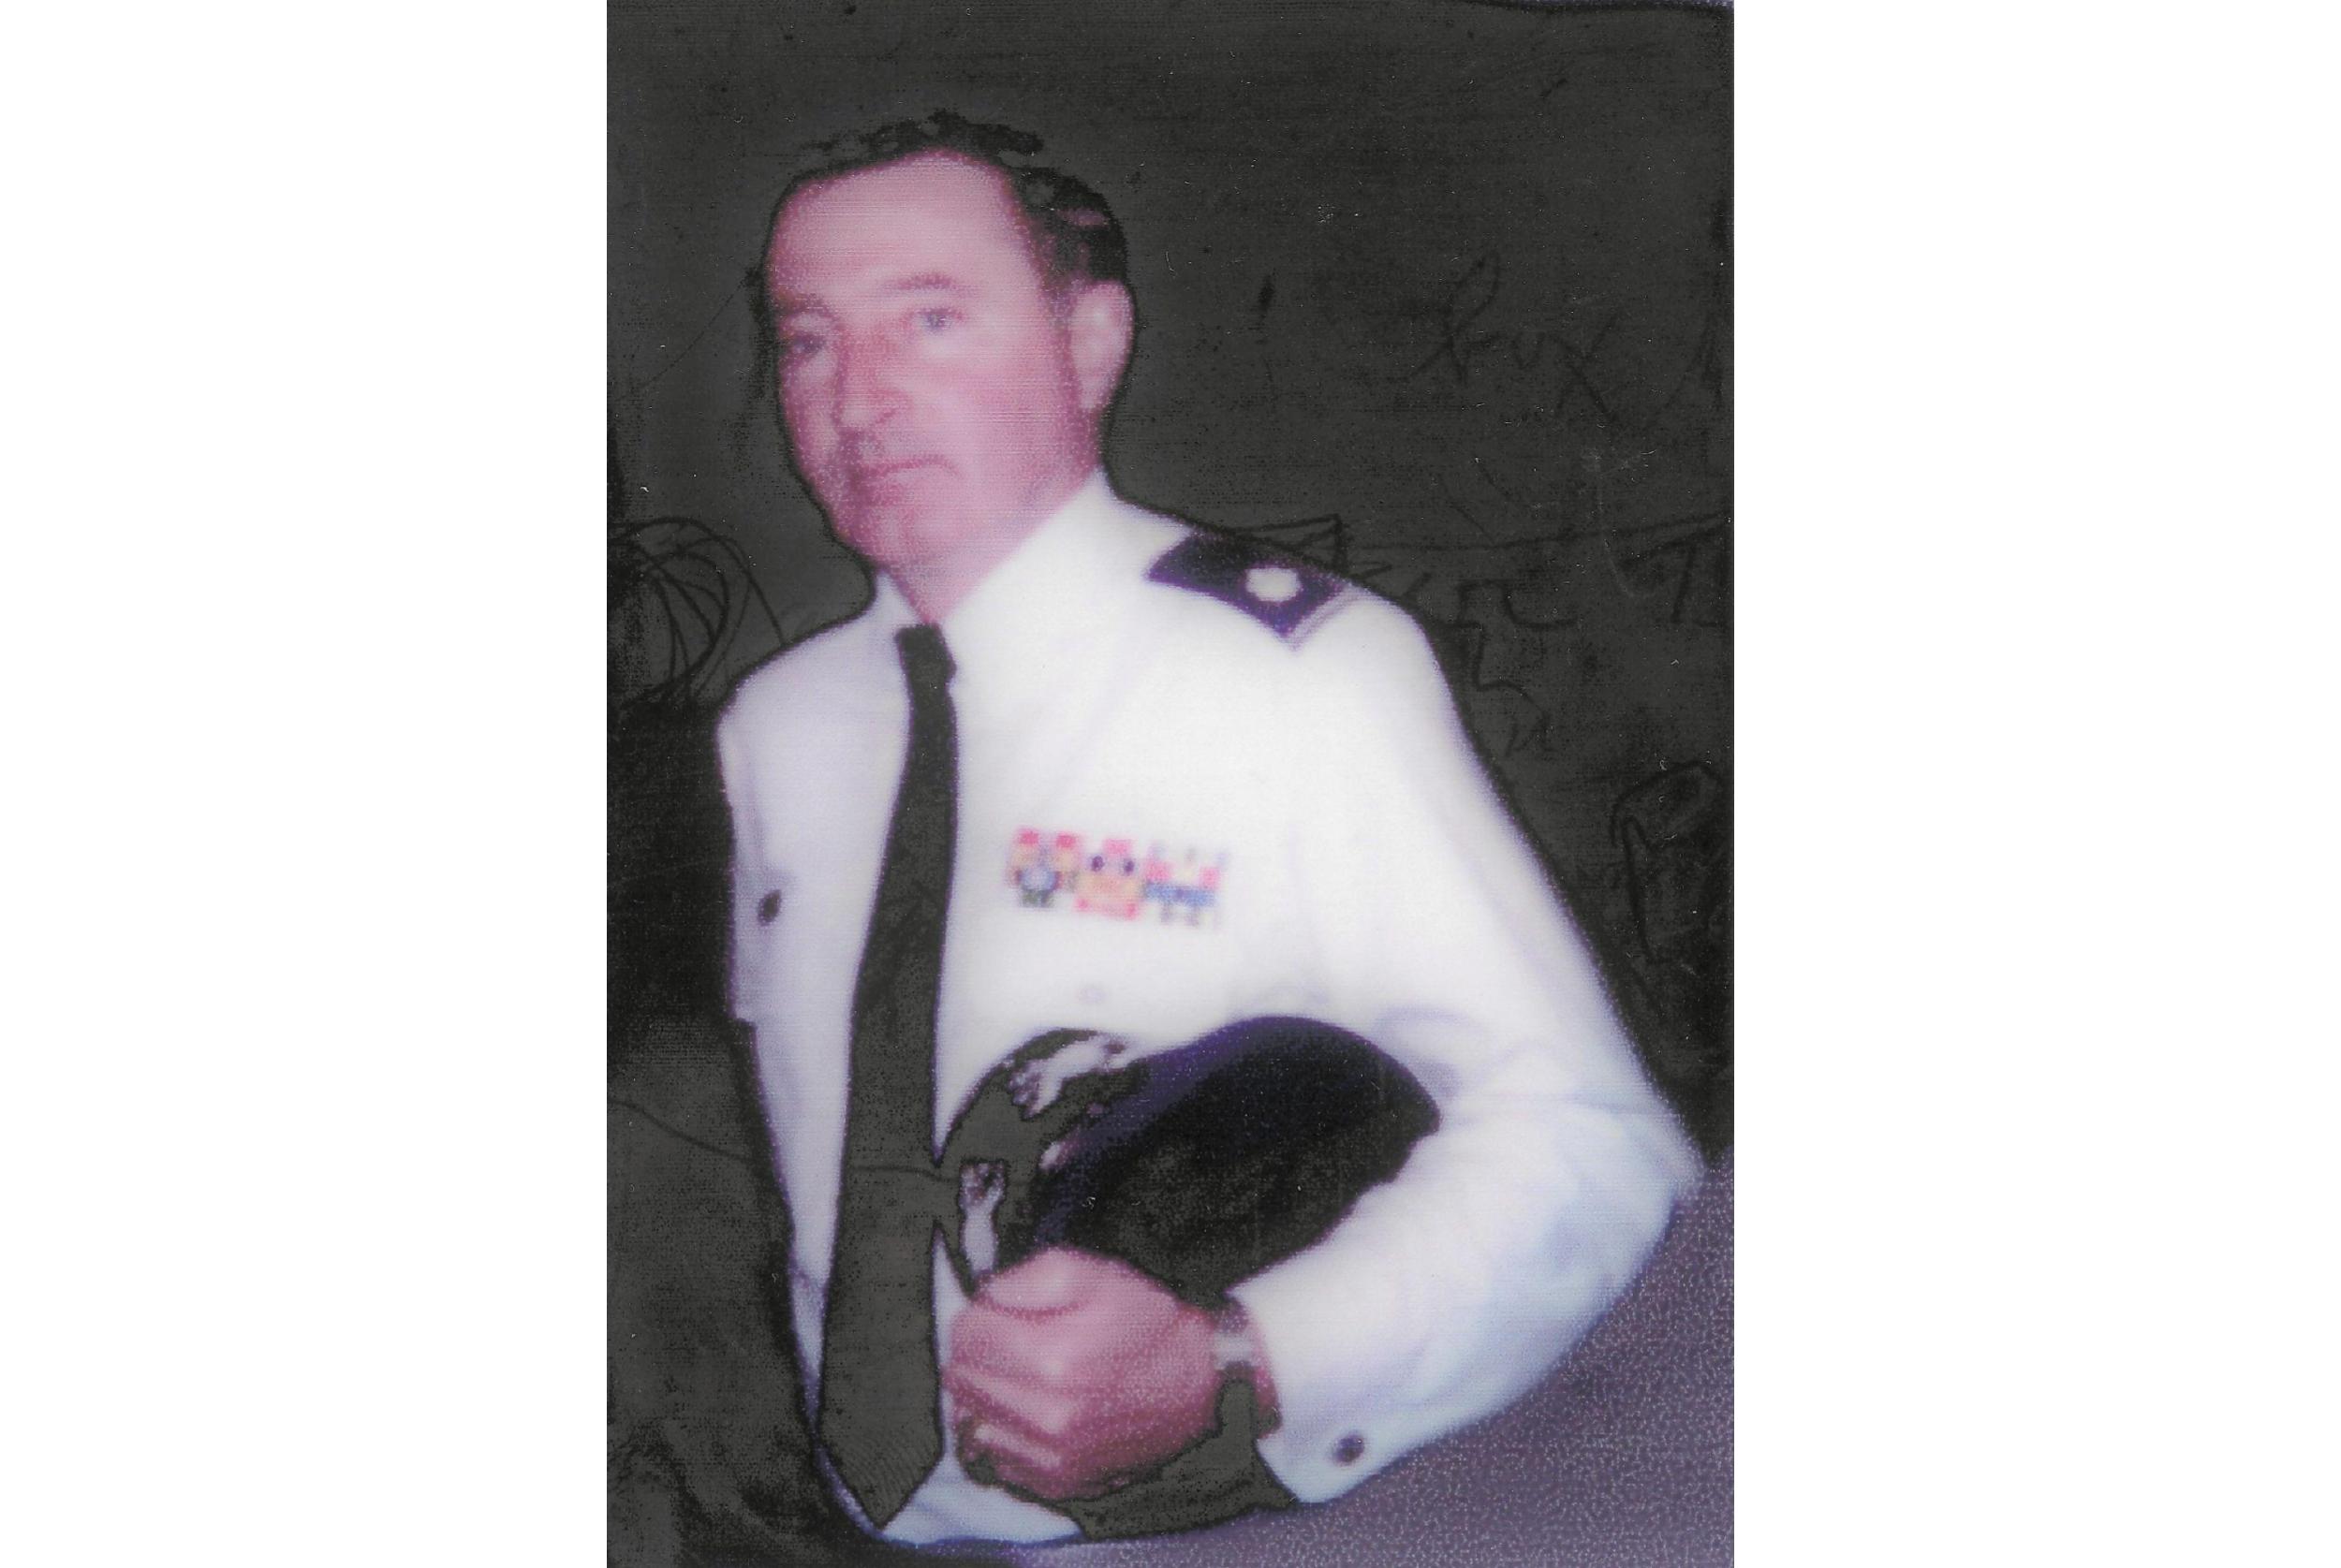 Lt Col Edward J. Hettinger, 91